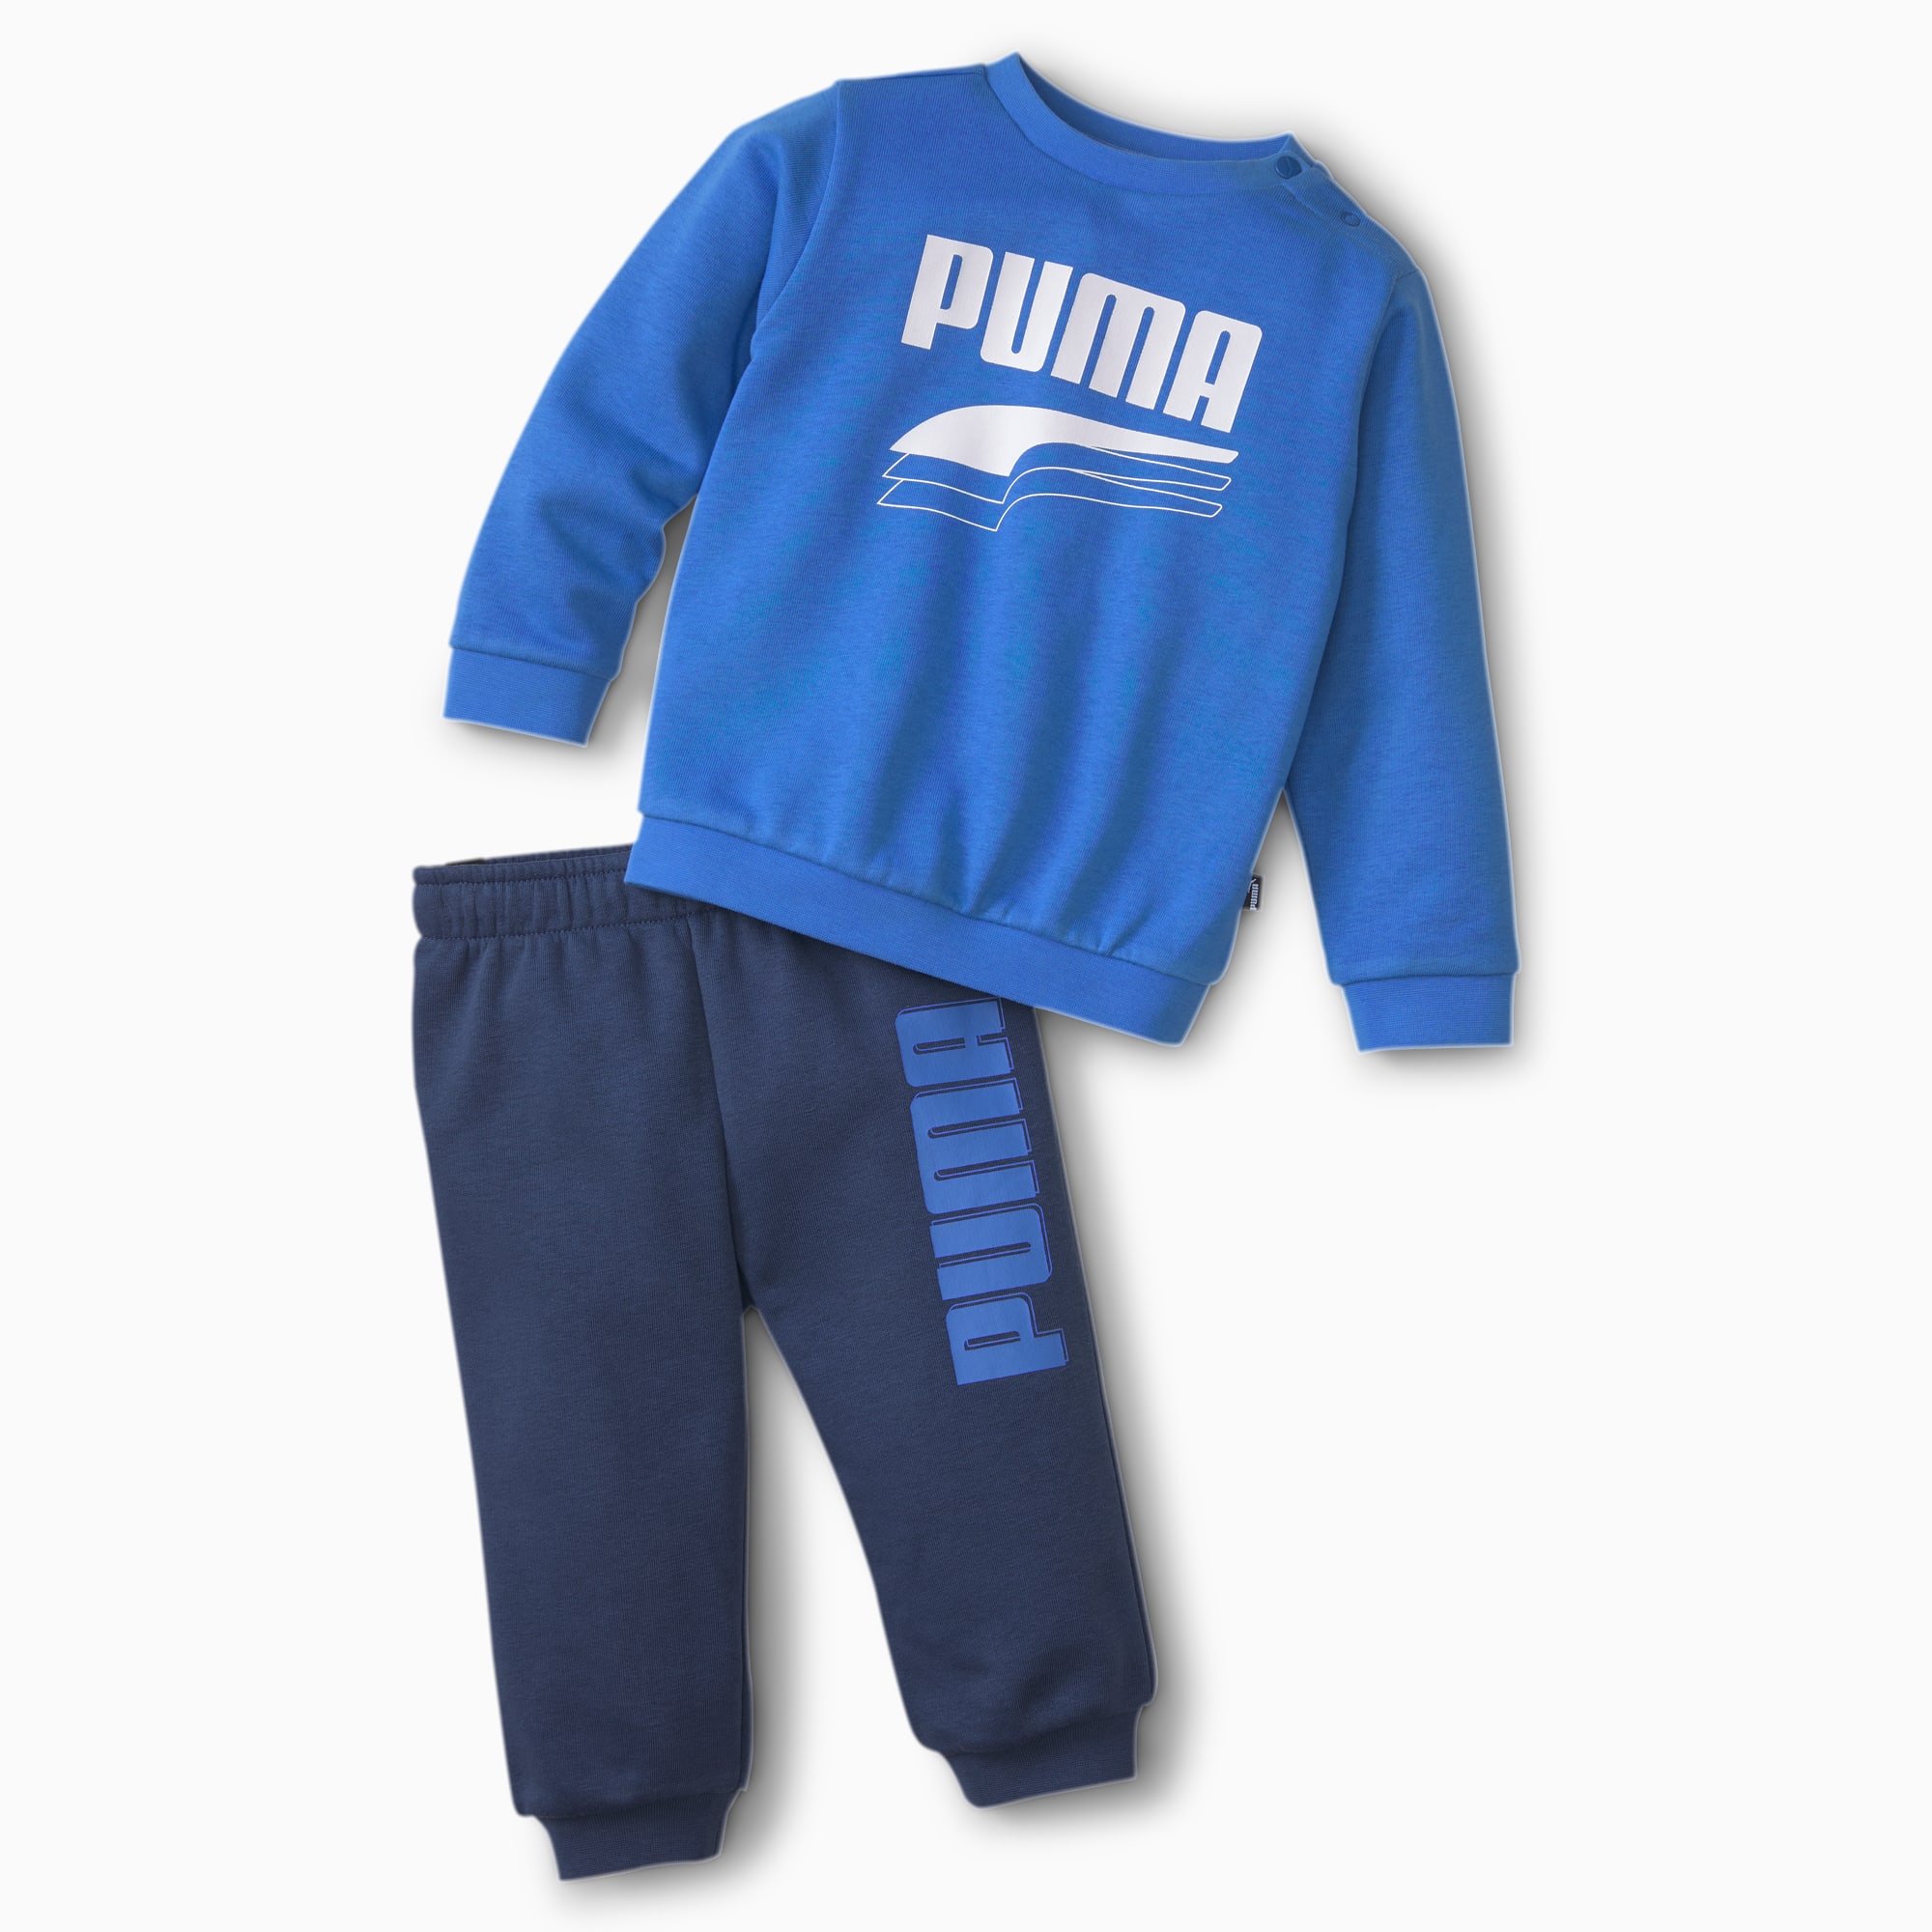 PUMA Survêtement Minicats Rebel pour bébé, Bleu, Taille 80, Vêtements